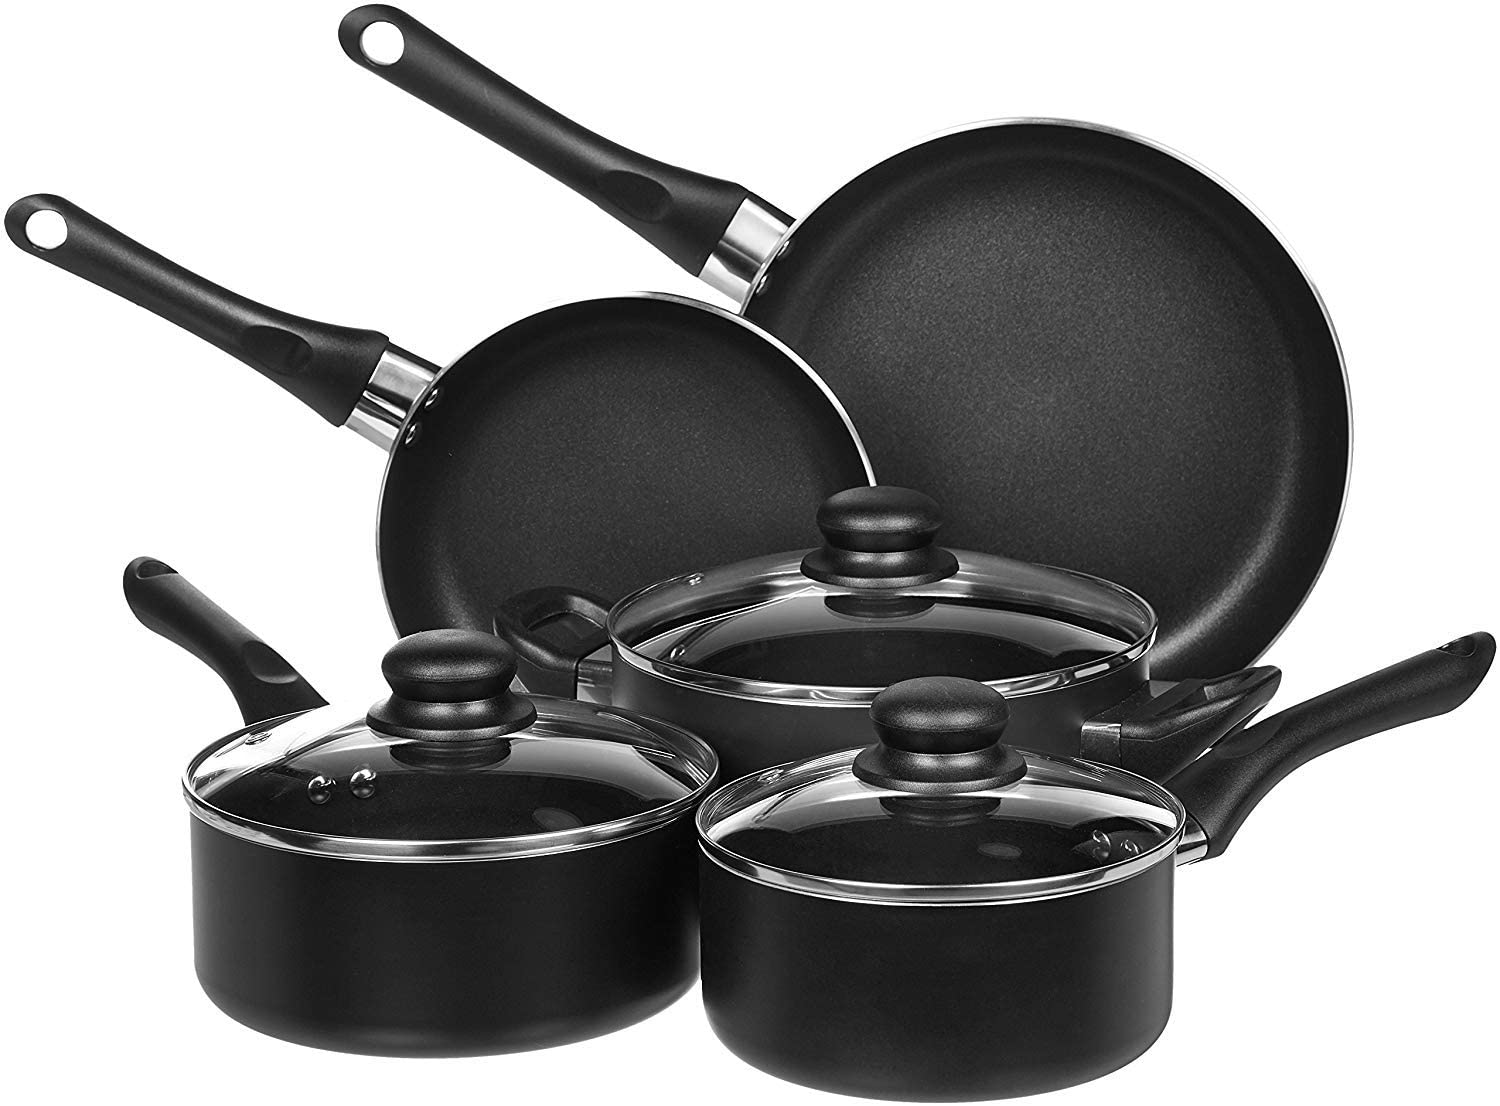 Amazon Basics Non-Stick Cookware Pots and Pans Set: 8-Piece